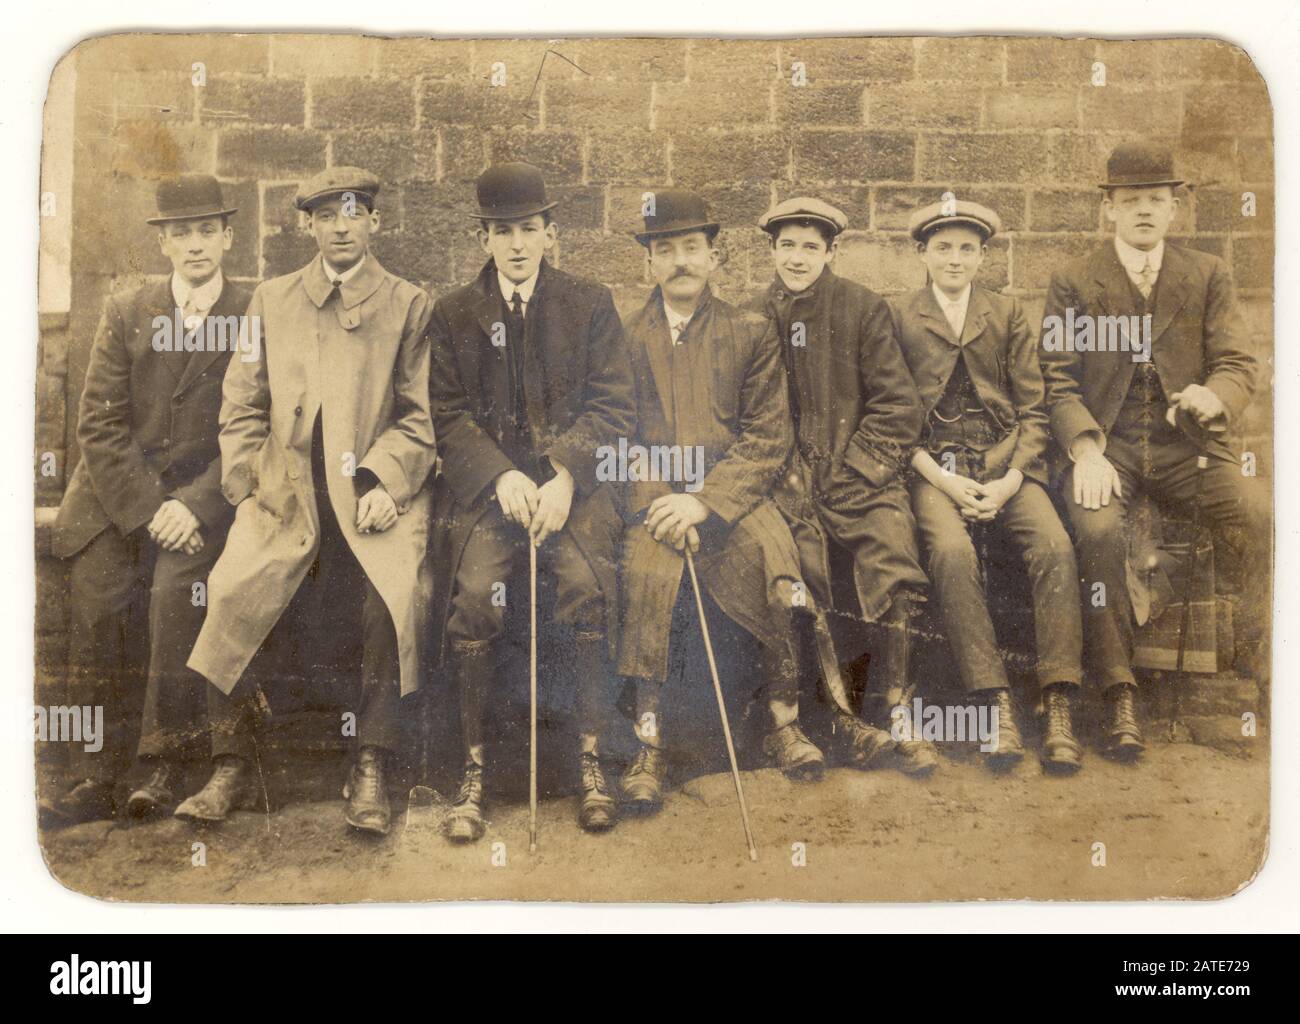 Anfang 1900 wurde die edwardianische Kabinettskarte der Gruppe von sieben jungen Männern und Jungen mit flachen Kappen und Bowler-Hüten, einige mit Wanderstöcken oder -Kähnen, abgerundeten Kragen, die zusammen sitzen, nachdem sie einen Spaziergang auf einer Bank gemacht hatten, Großbritannien Um 1905 Stockfoto